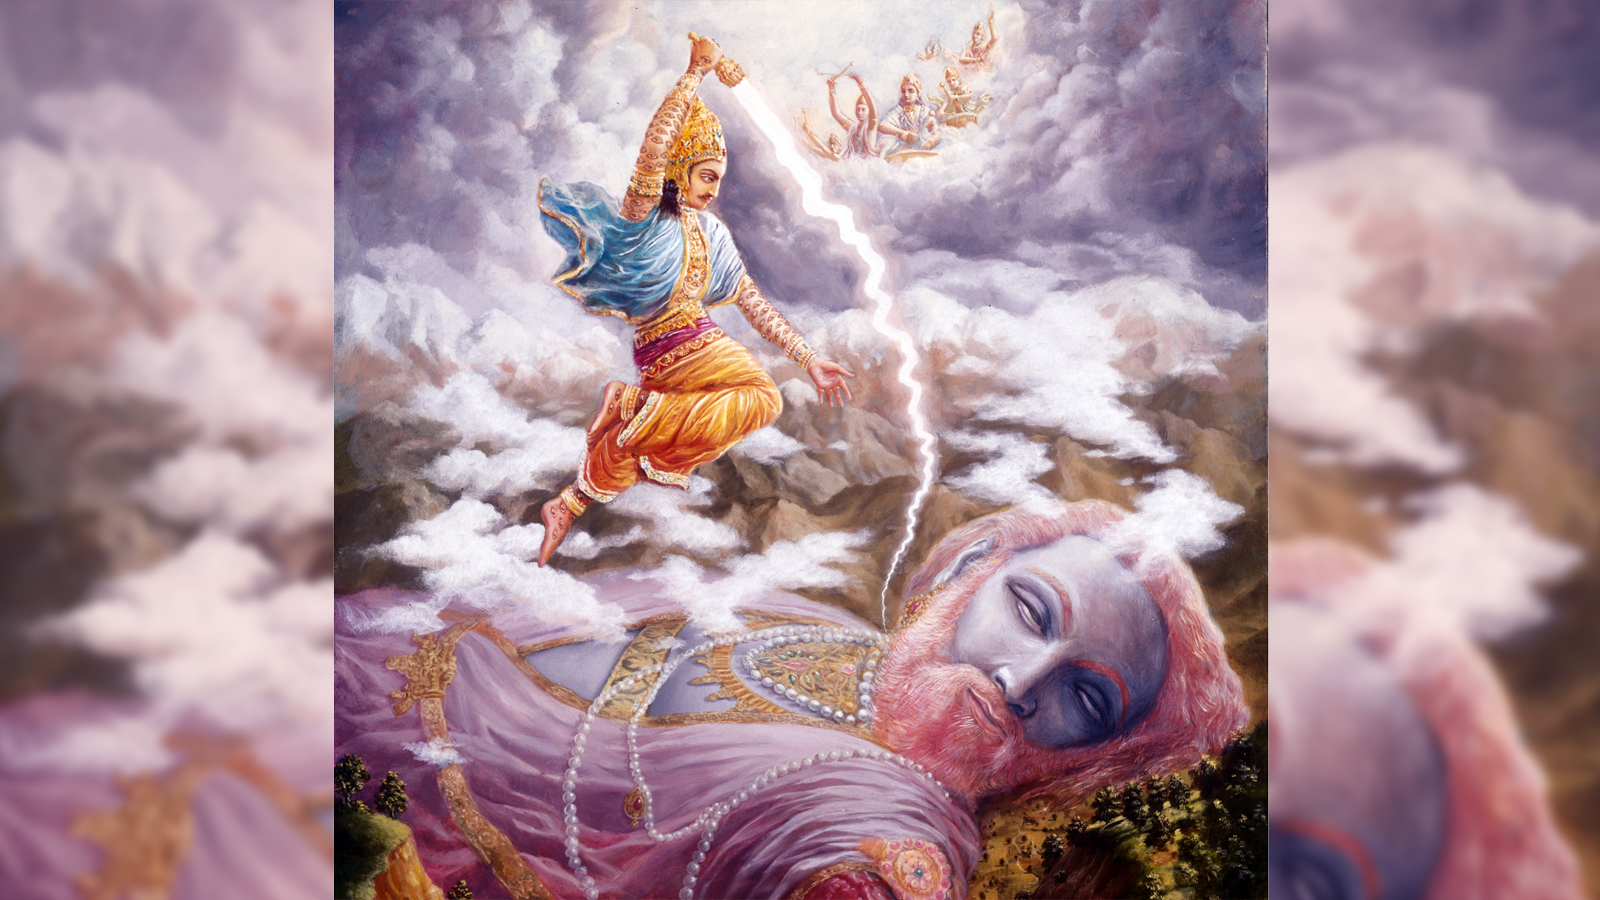 Indra kills Vritrasura